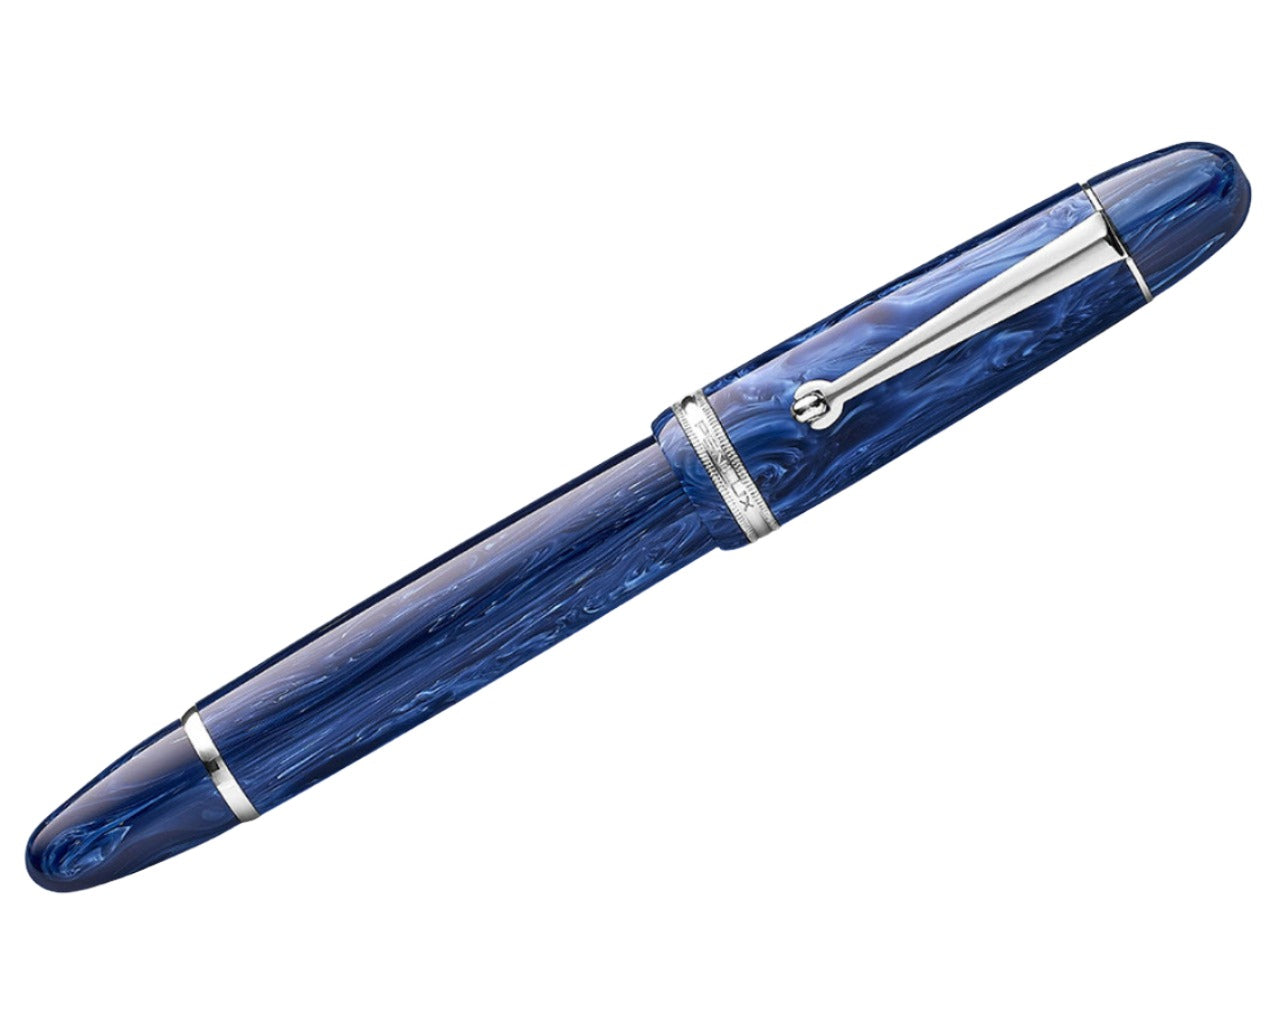 Penlux Masterpiece Grande Fountain Pen - Blue Wave